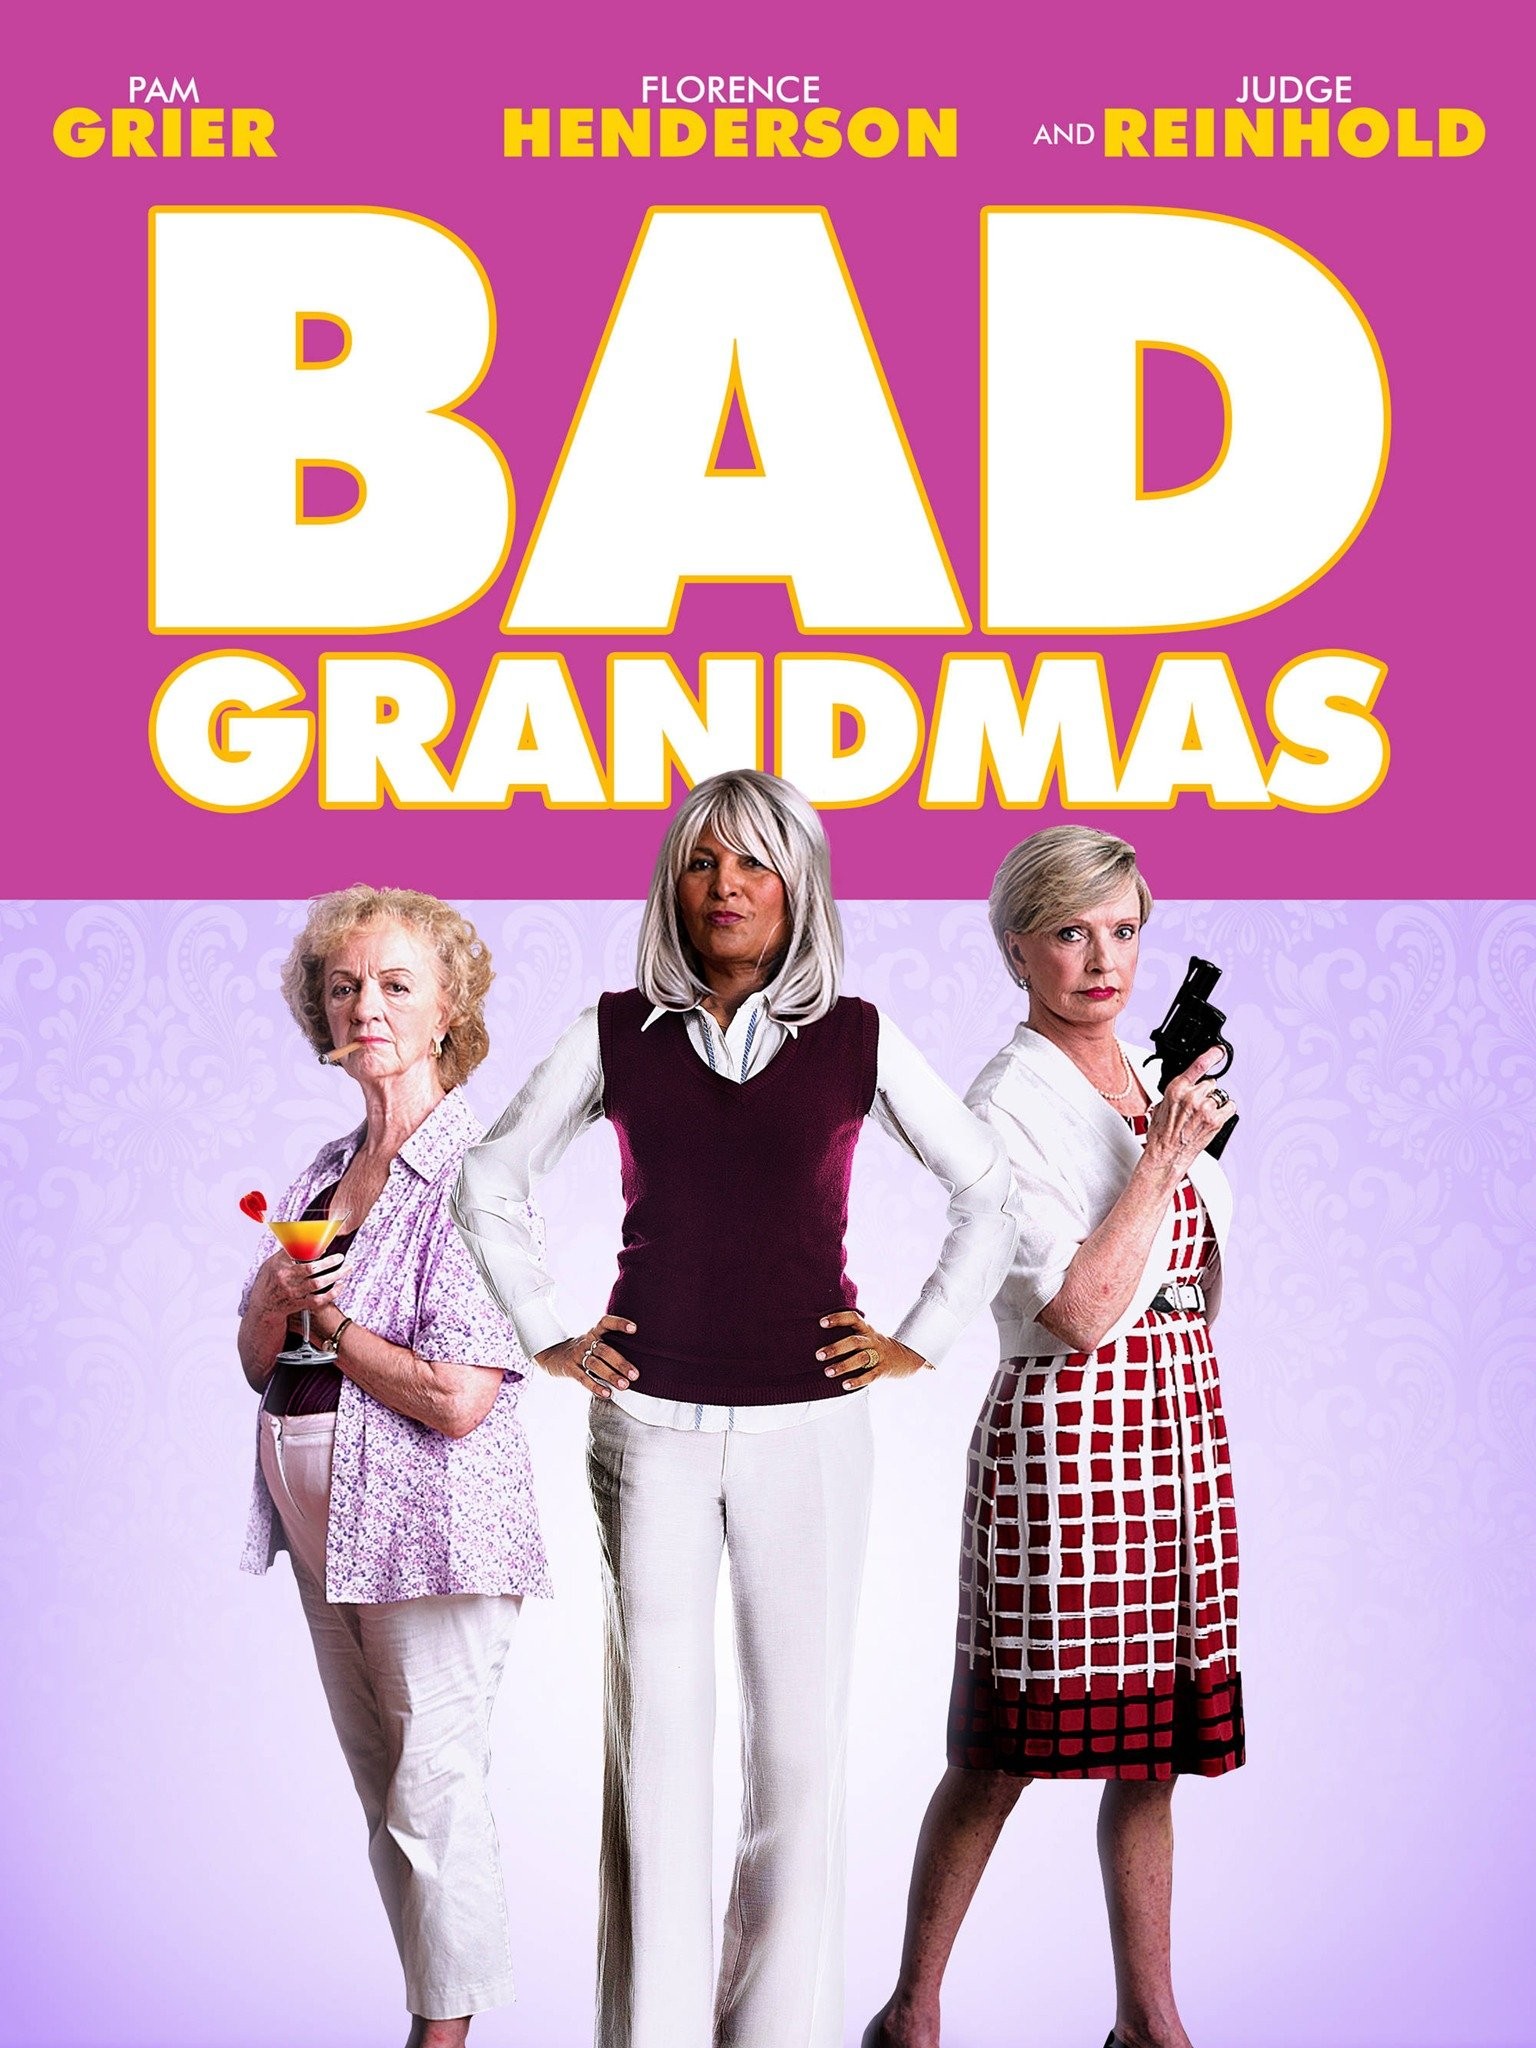 Badass grandmas in TV and movies